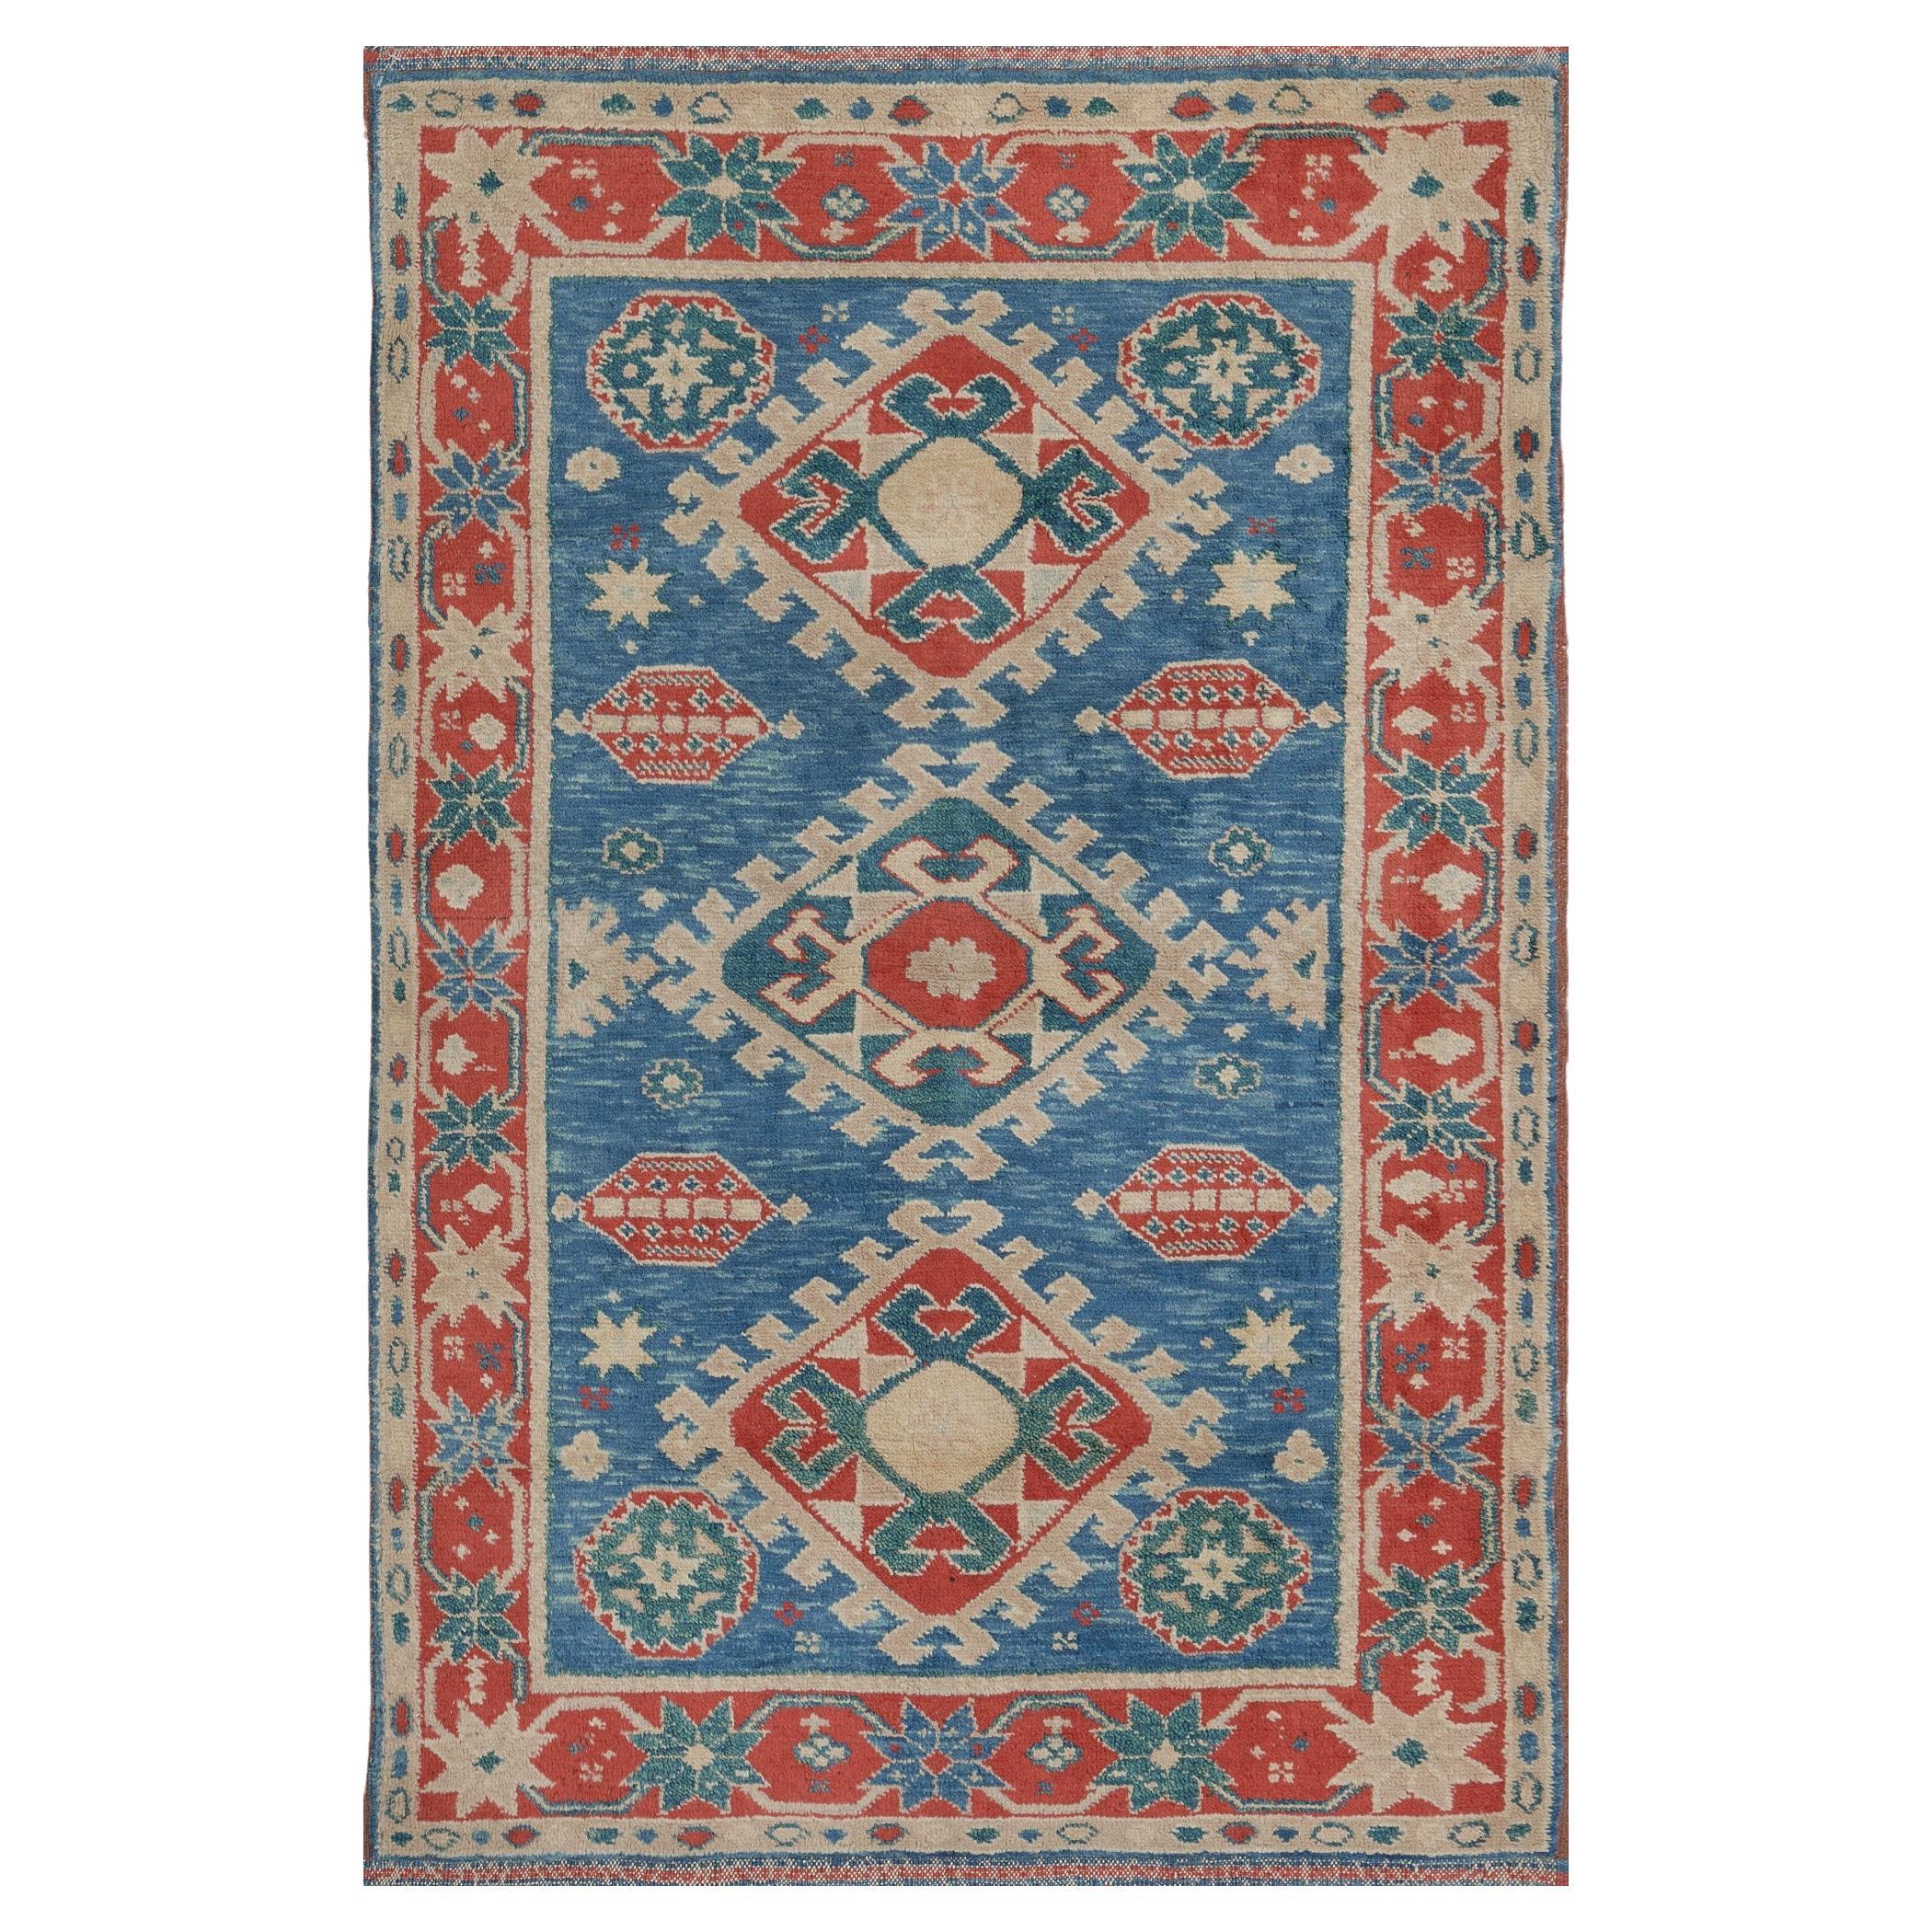 Traditioneller handgewebter türkischer Teppich aus Wolle mit Blumenmuster